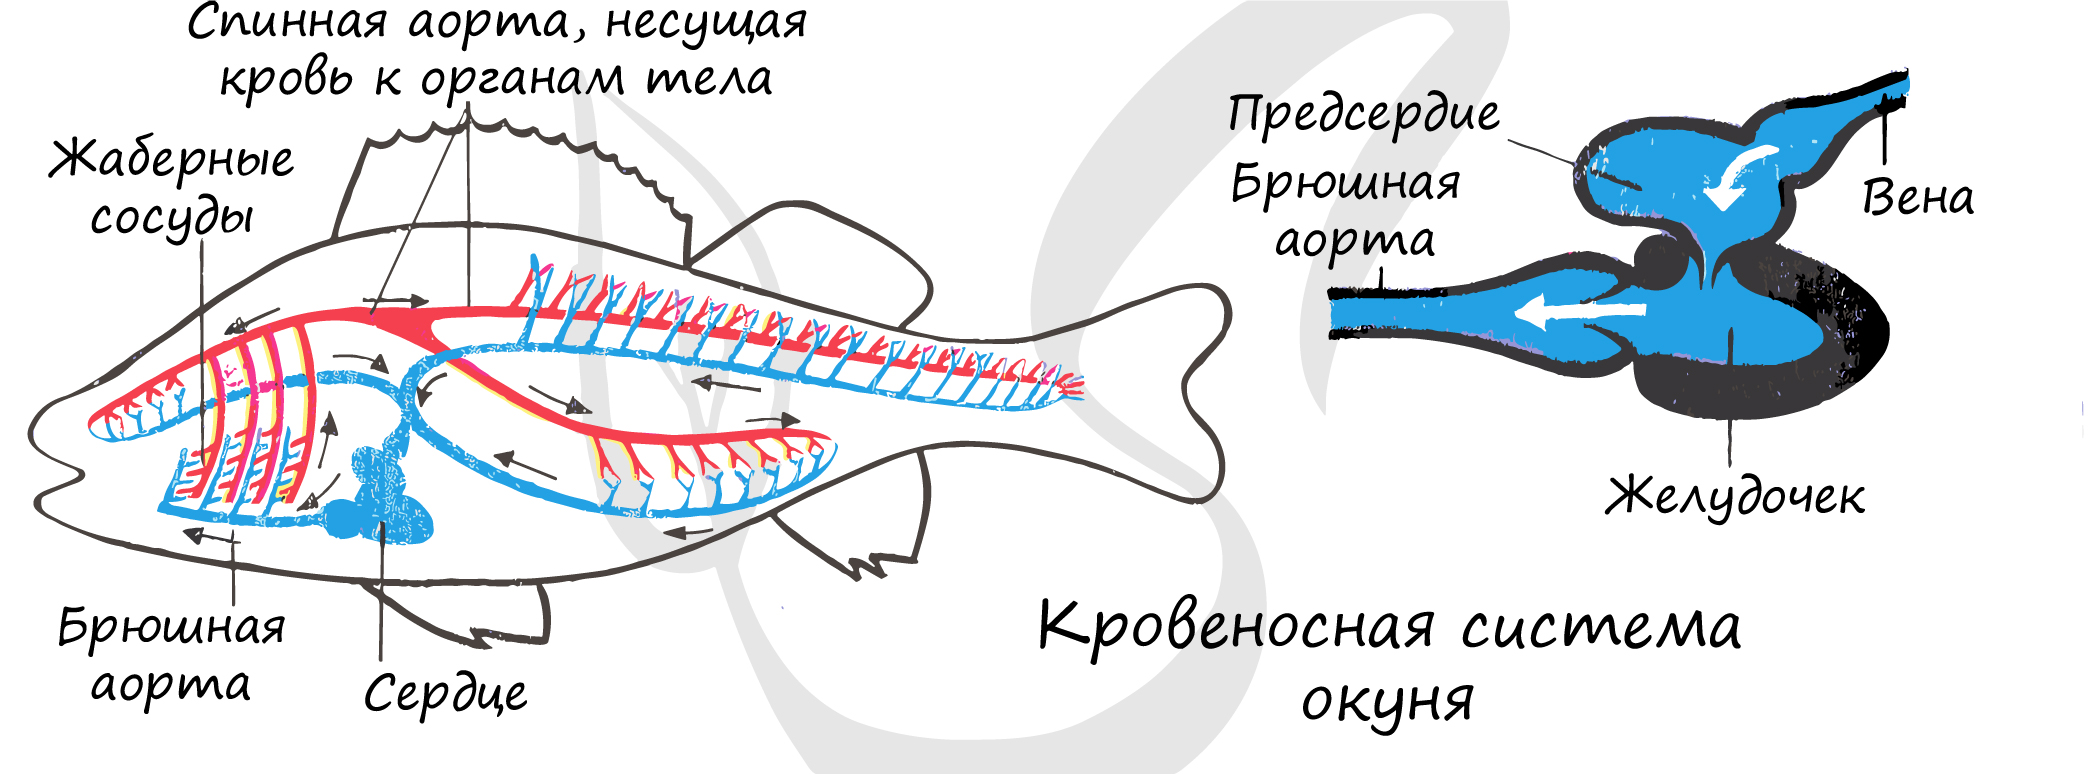 Замкнутая дыхательная система. Схема строения кровеносной системы костной рыбы. Кровеносная система рыб схема 7 класс. Внутреннее строение речного окуня кровеносная система. Кровеносная система у рыб представлена кровообращения.